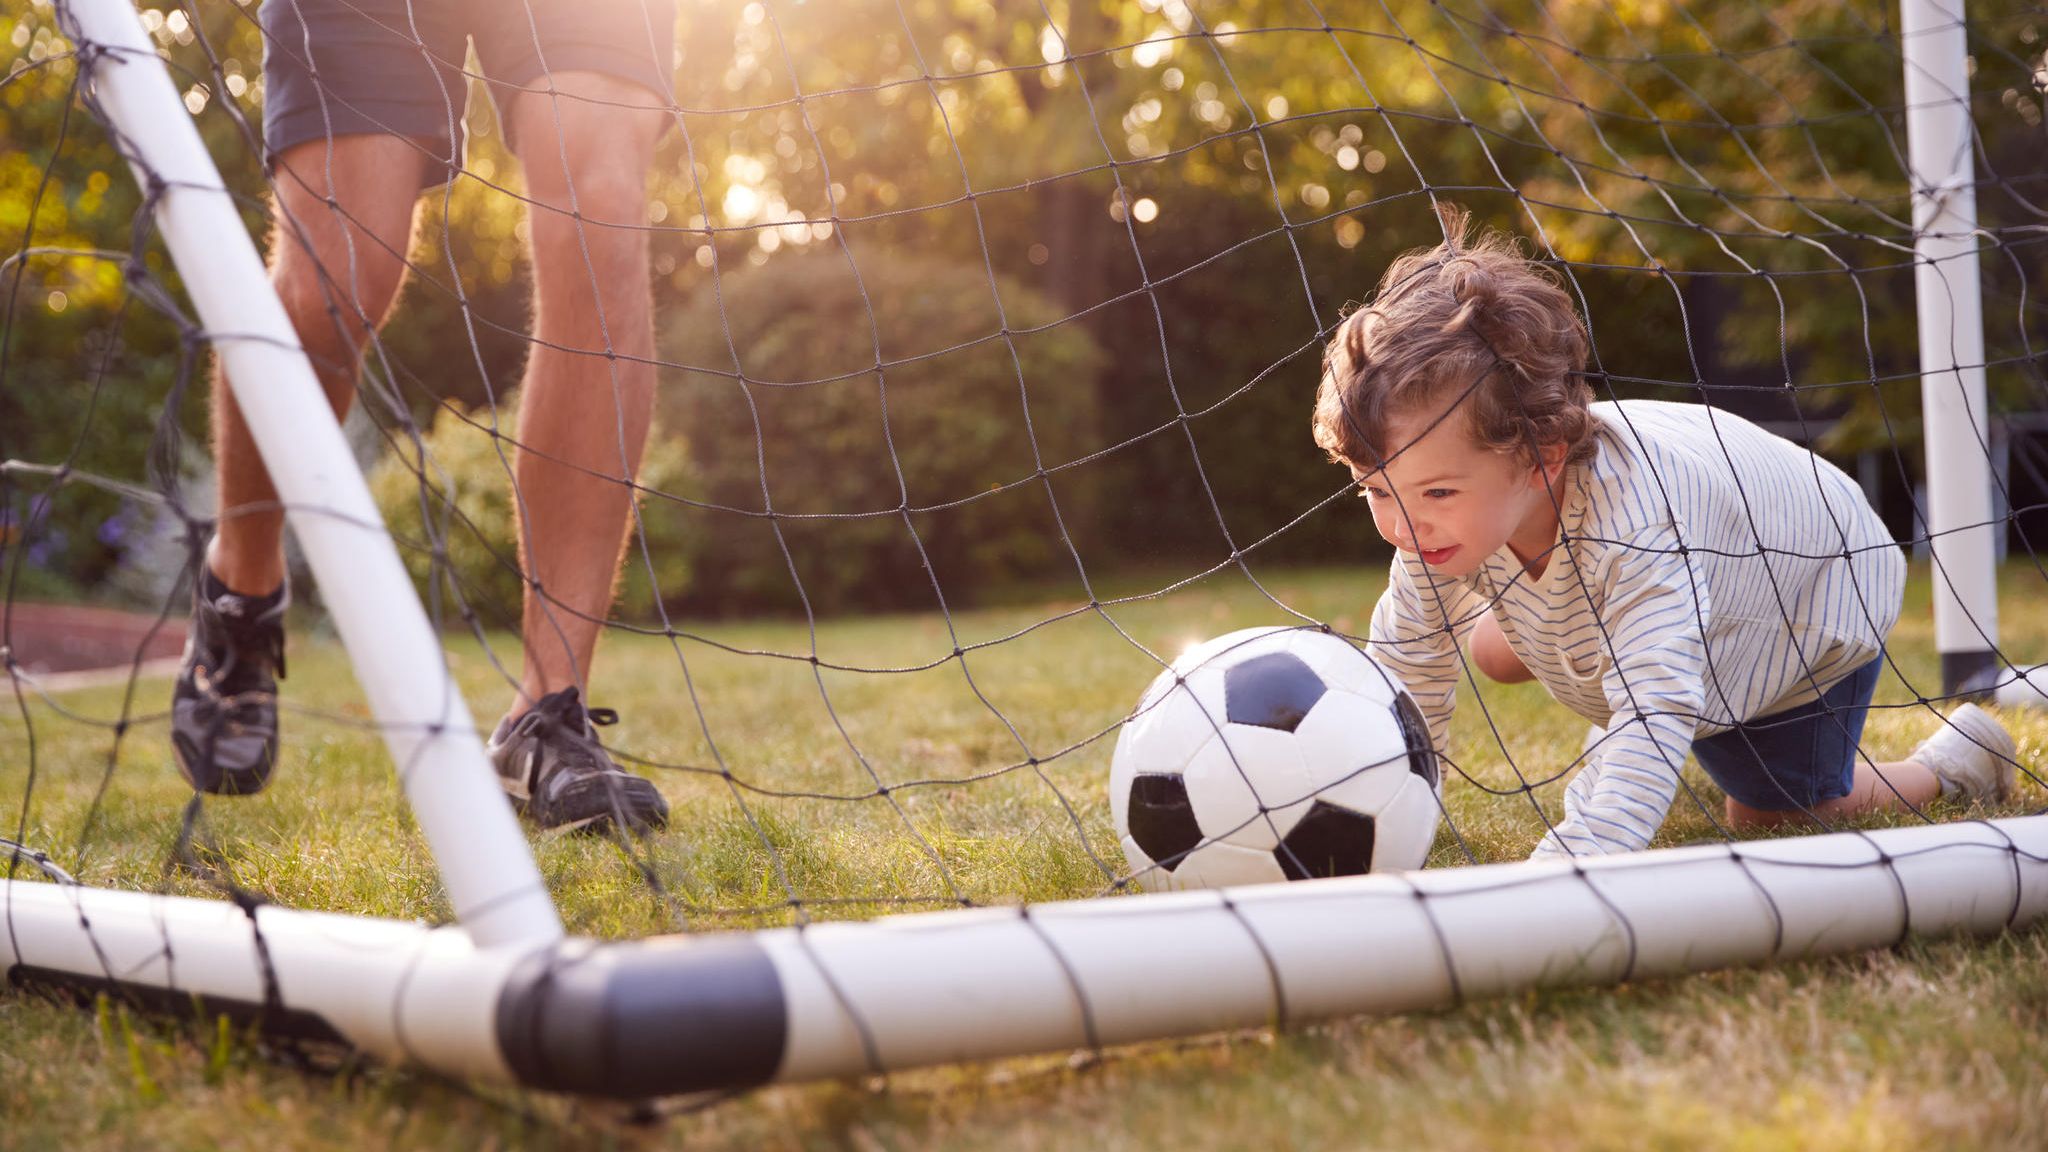 Kauftipps Zubehör für Kinder: Fußballtore und sinnvolles